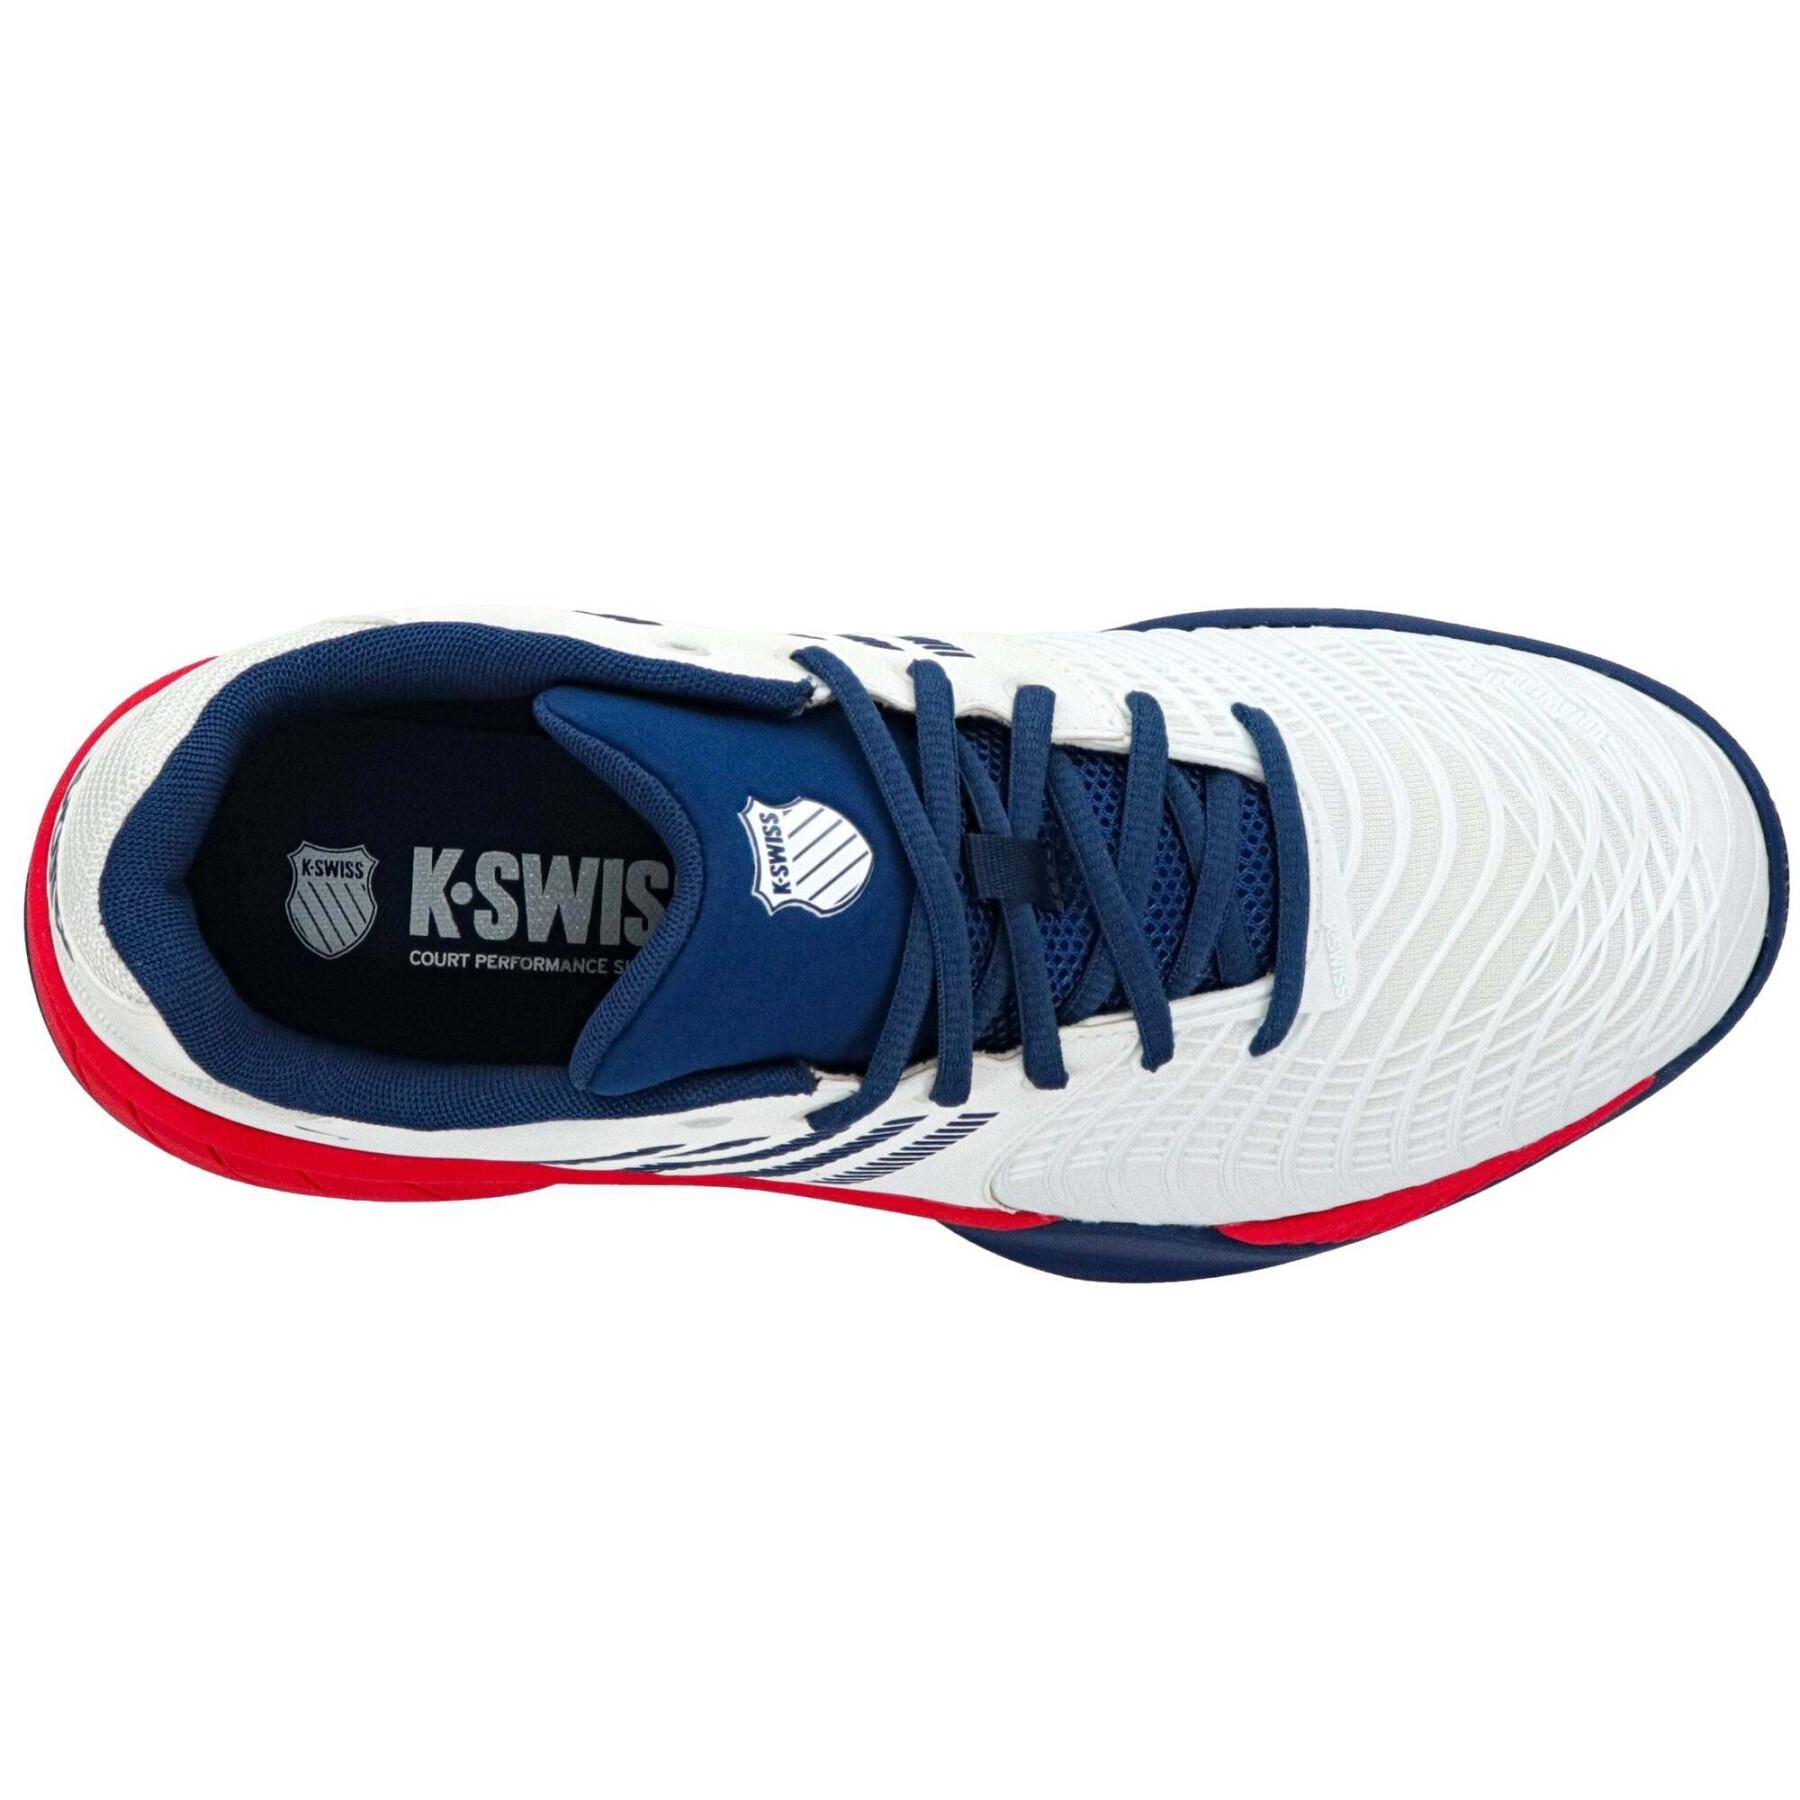 Tennis shoes K-Swiss Express Light 3 Hb